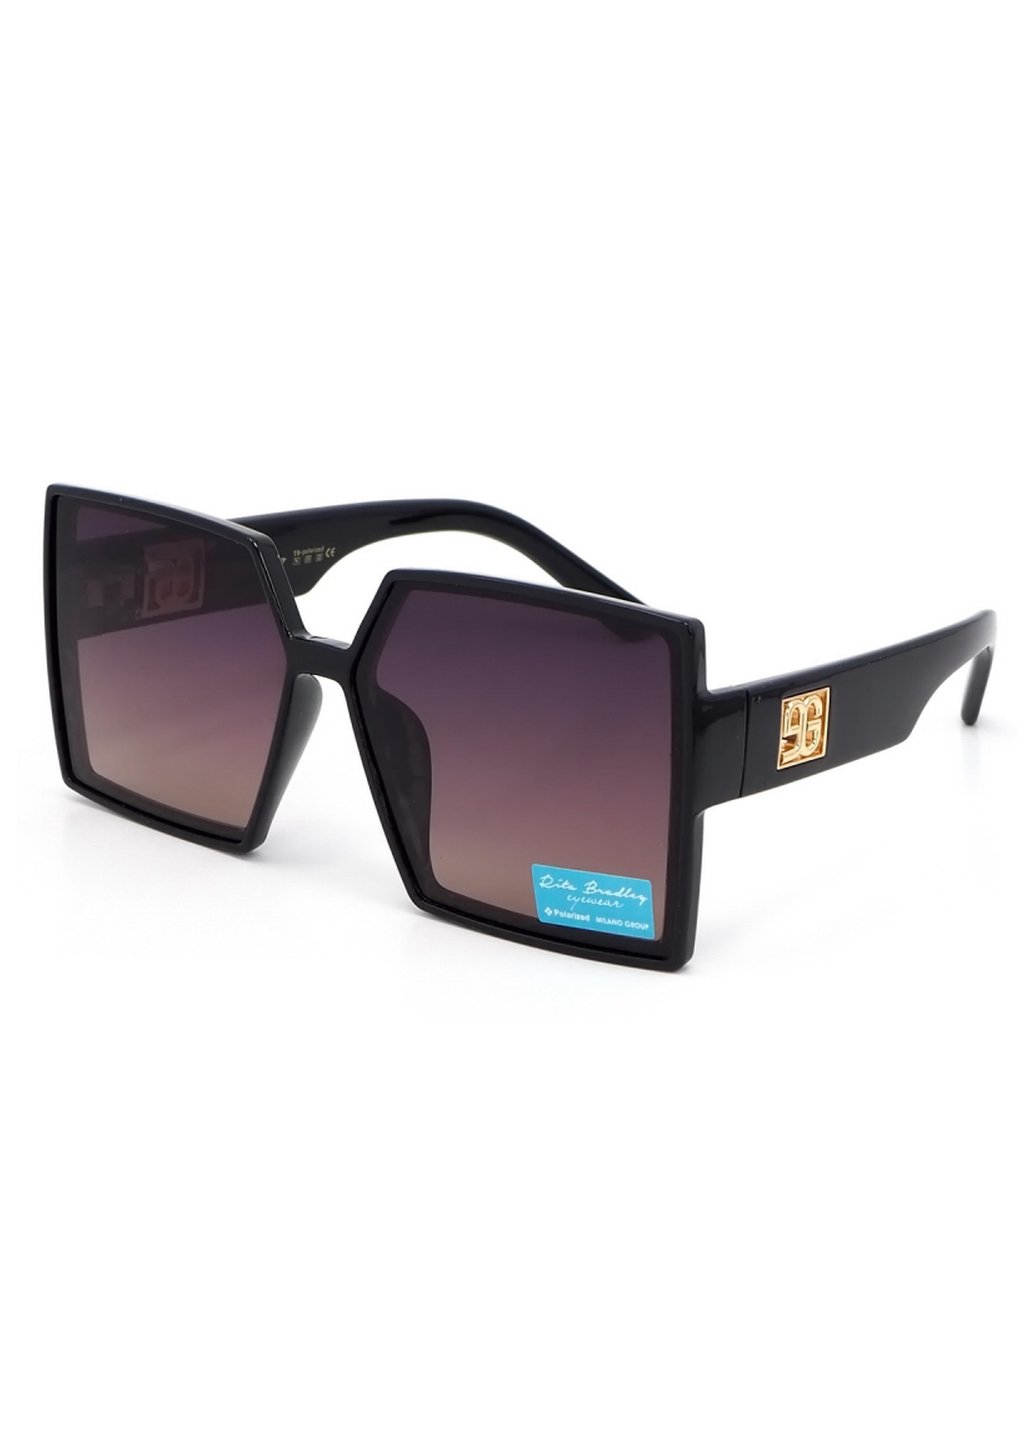 Купить Женские солнцезащитные очки Rita Bradley с поляризацией RB731 112080 в интернет-магазине